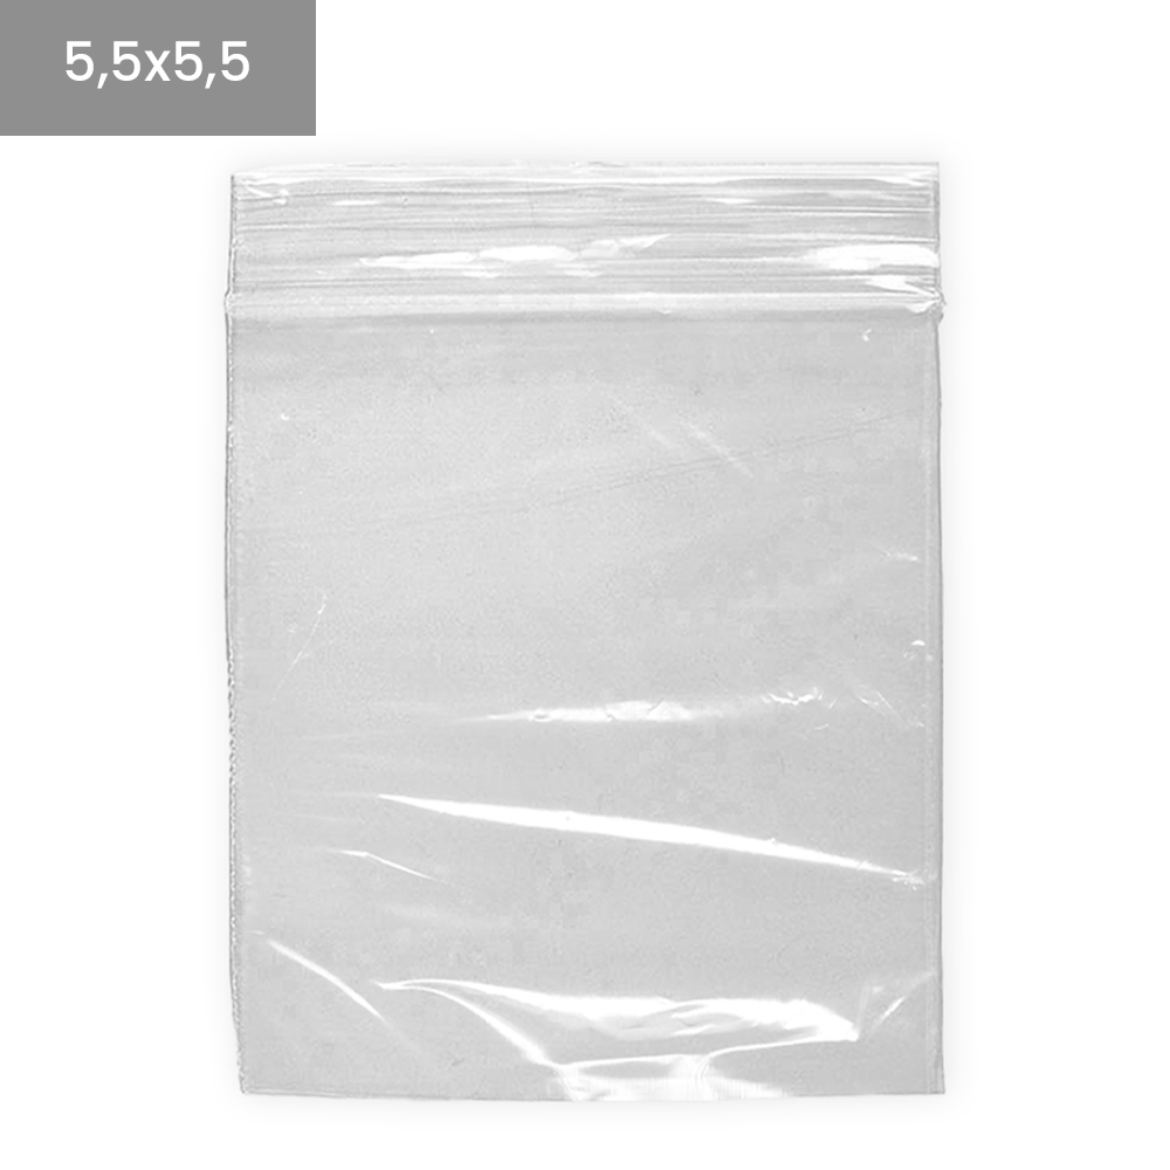 Bolsas de plástico transparentes ZIP 5,5x5,5